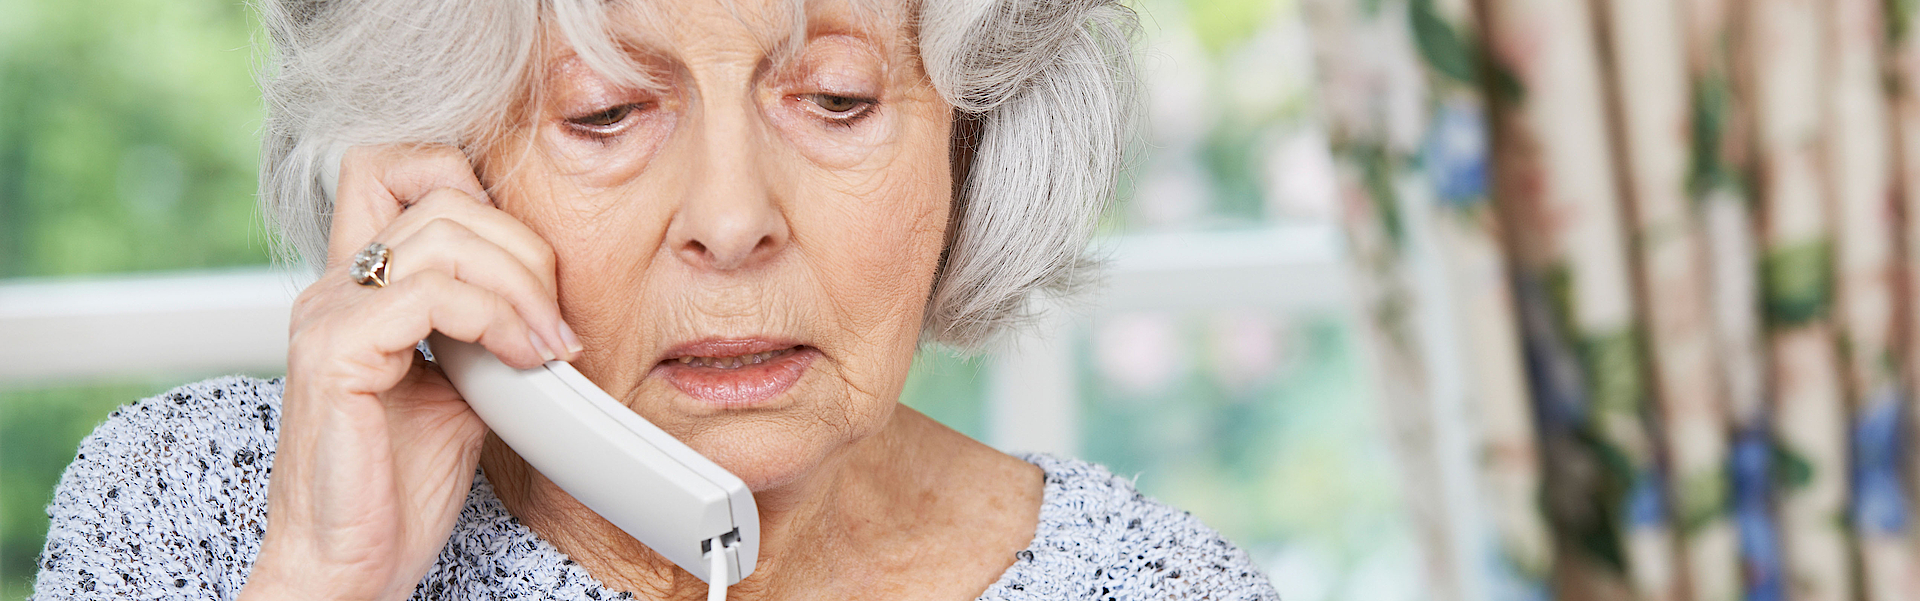 Eine ältere Frau mit grauen Haaren telefoniert. Sie macht ein besorgtes Gesicht. In der Hand hält sie ihre Bankkarte. Sie gibt dem Anrufer ihre Bankdaten durch.